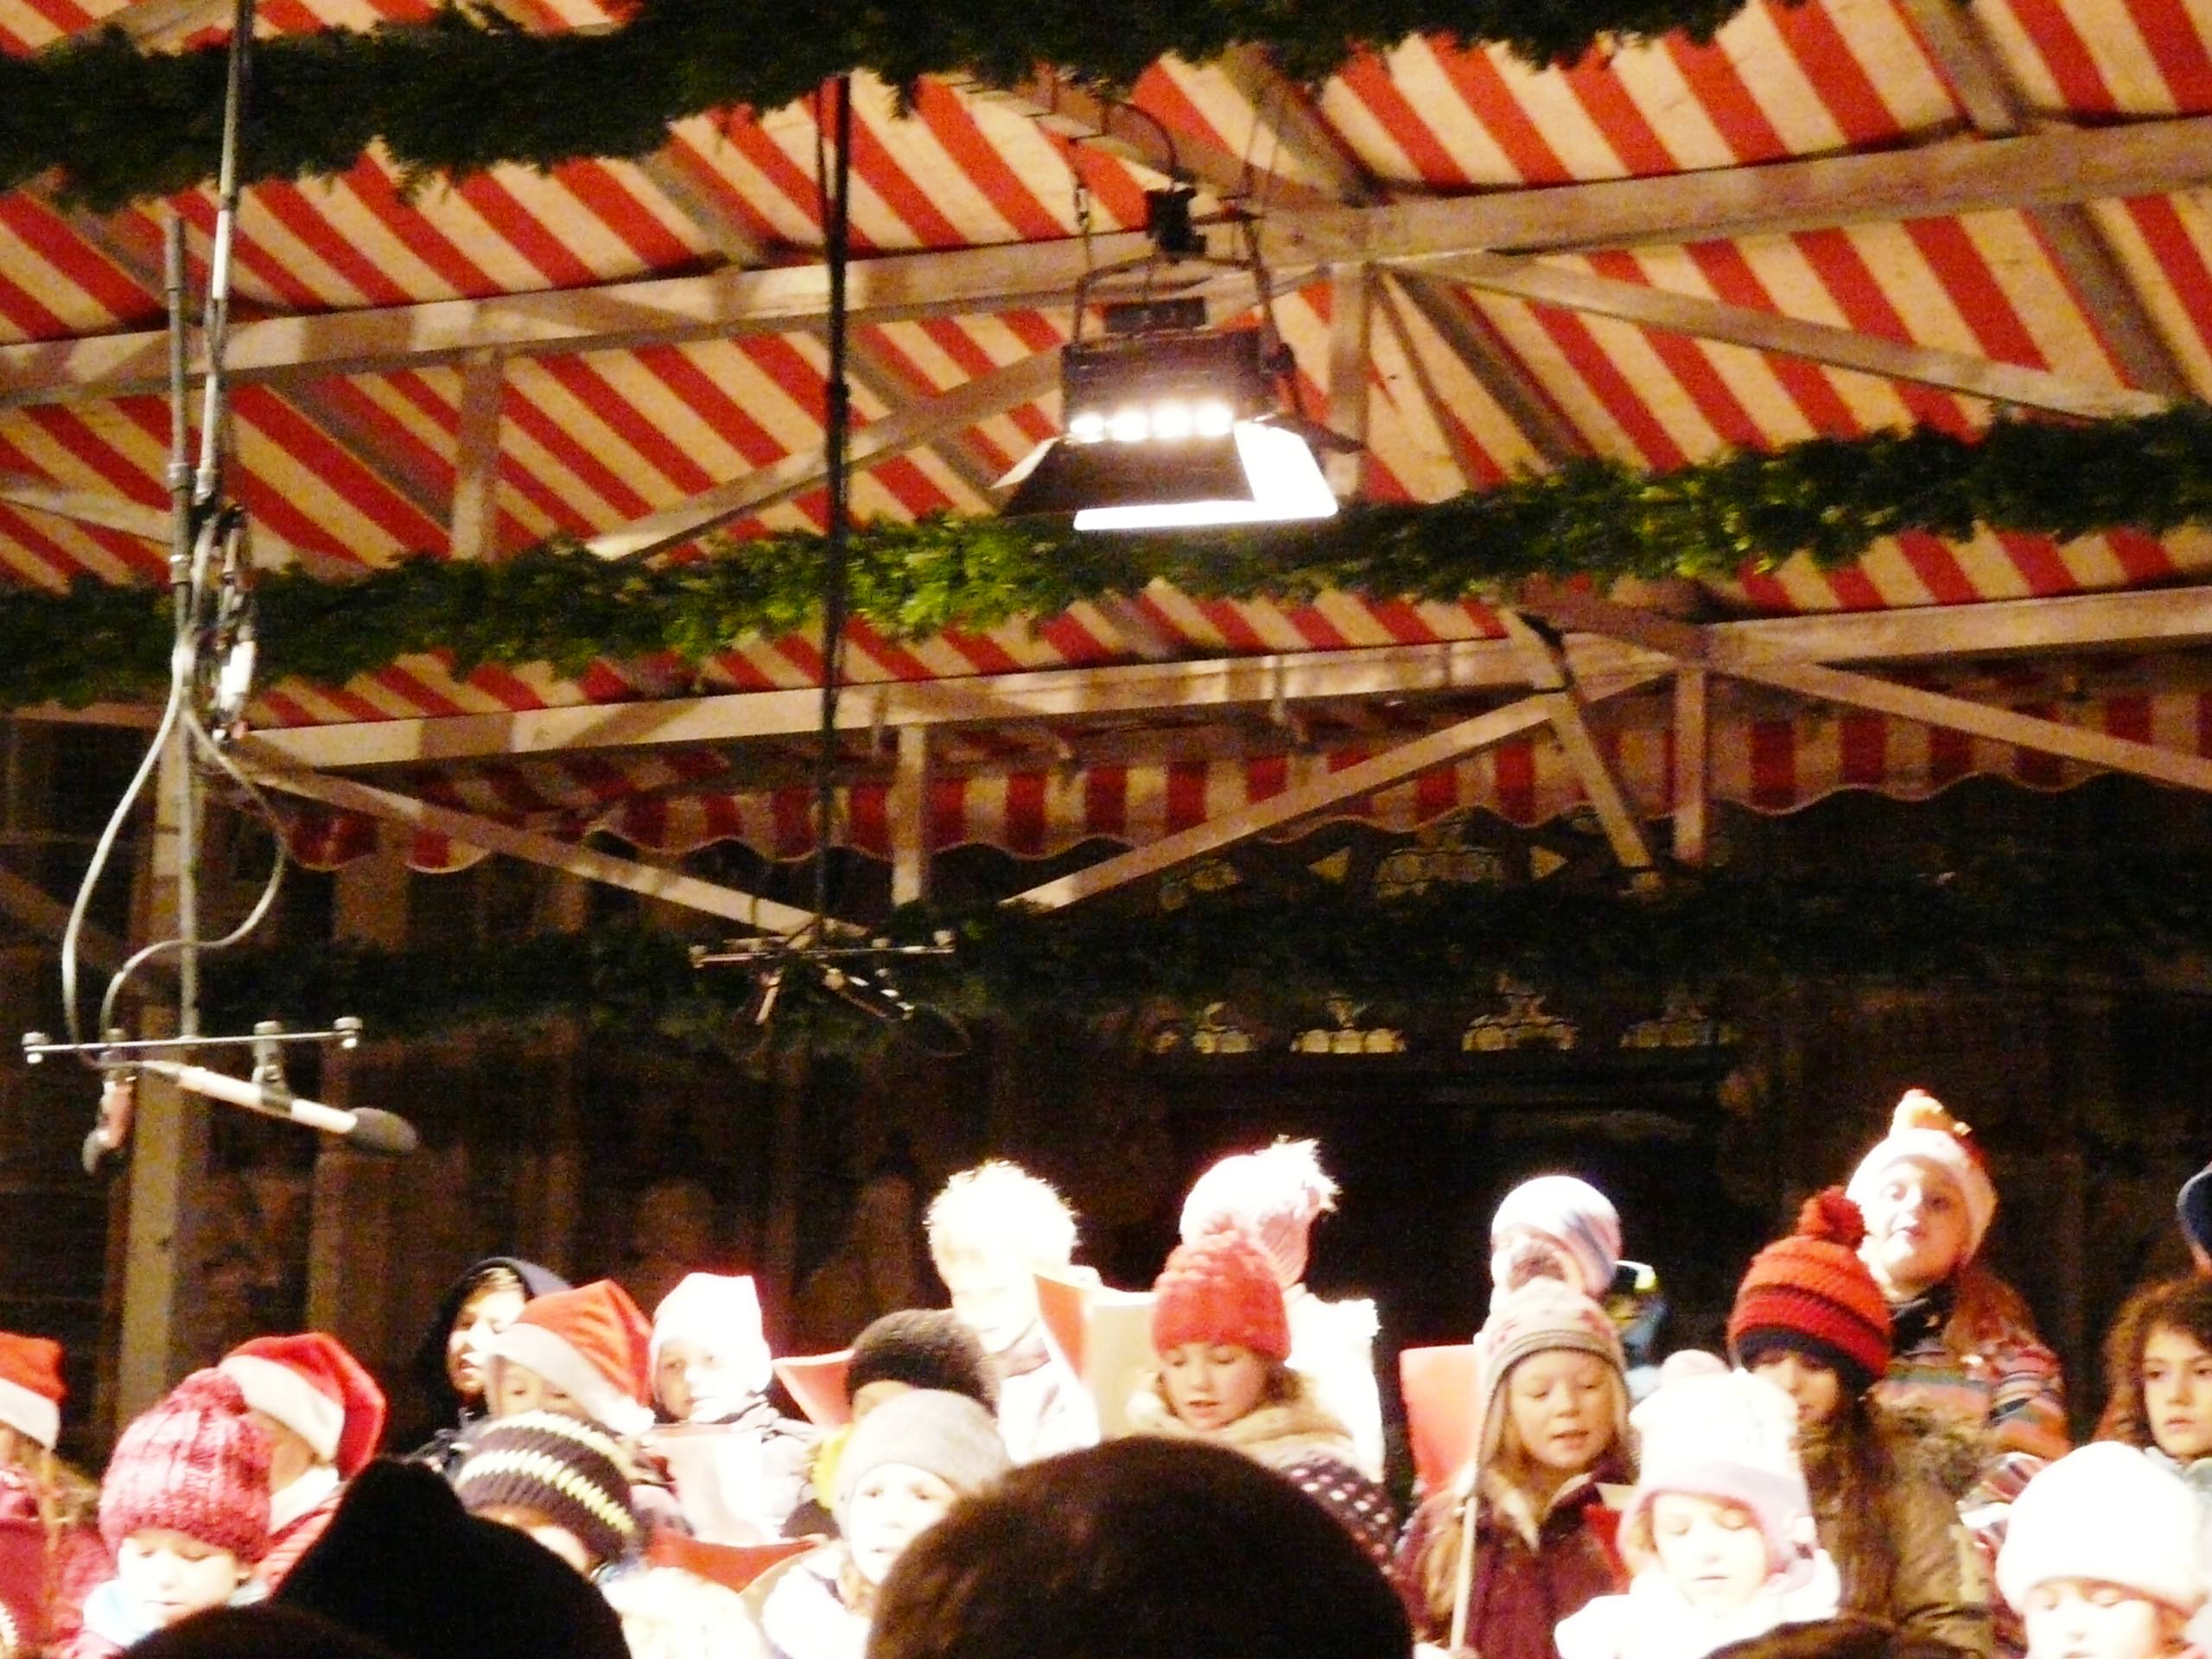 τα παιδια τραγουδουν χριστουγεννιατικα τραγουδια στη πλατεια Νυρεμβεργη..